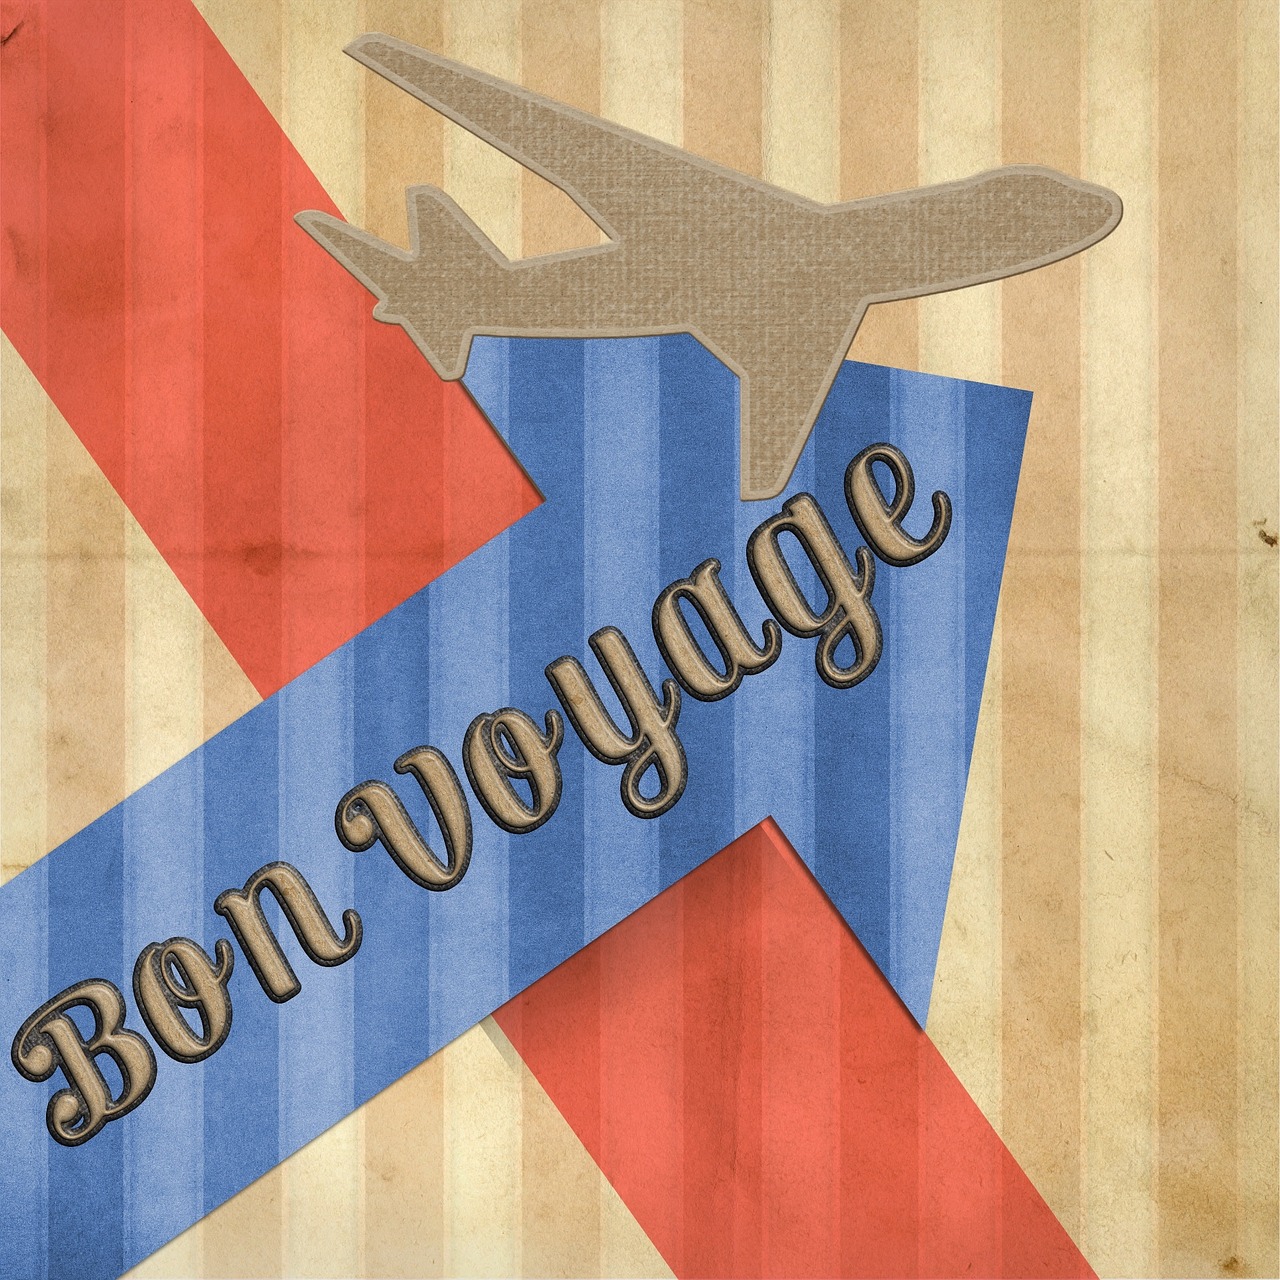 bon voyage card greeting free photo